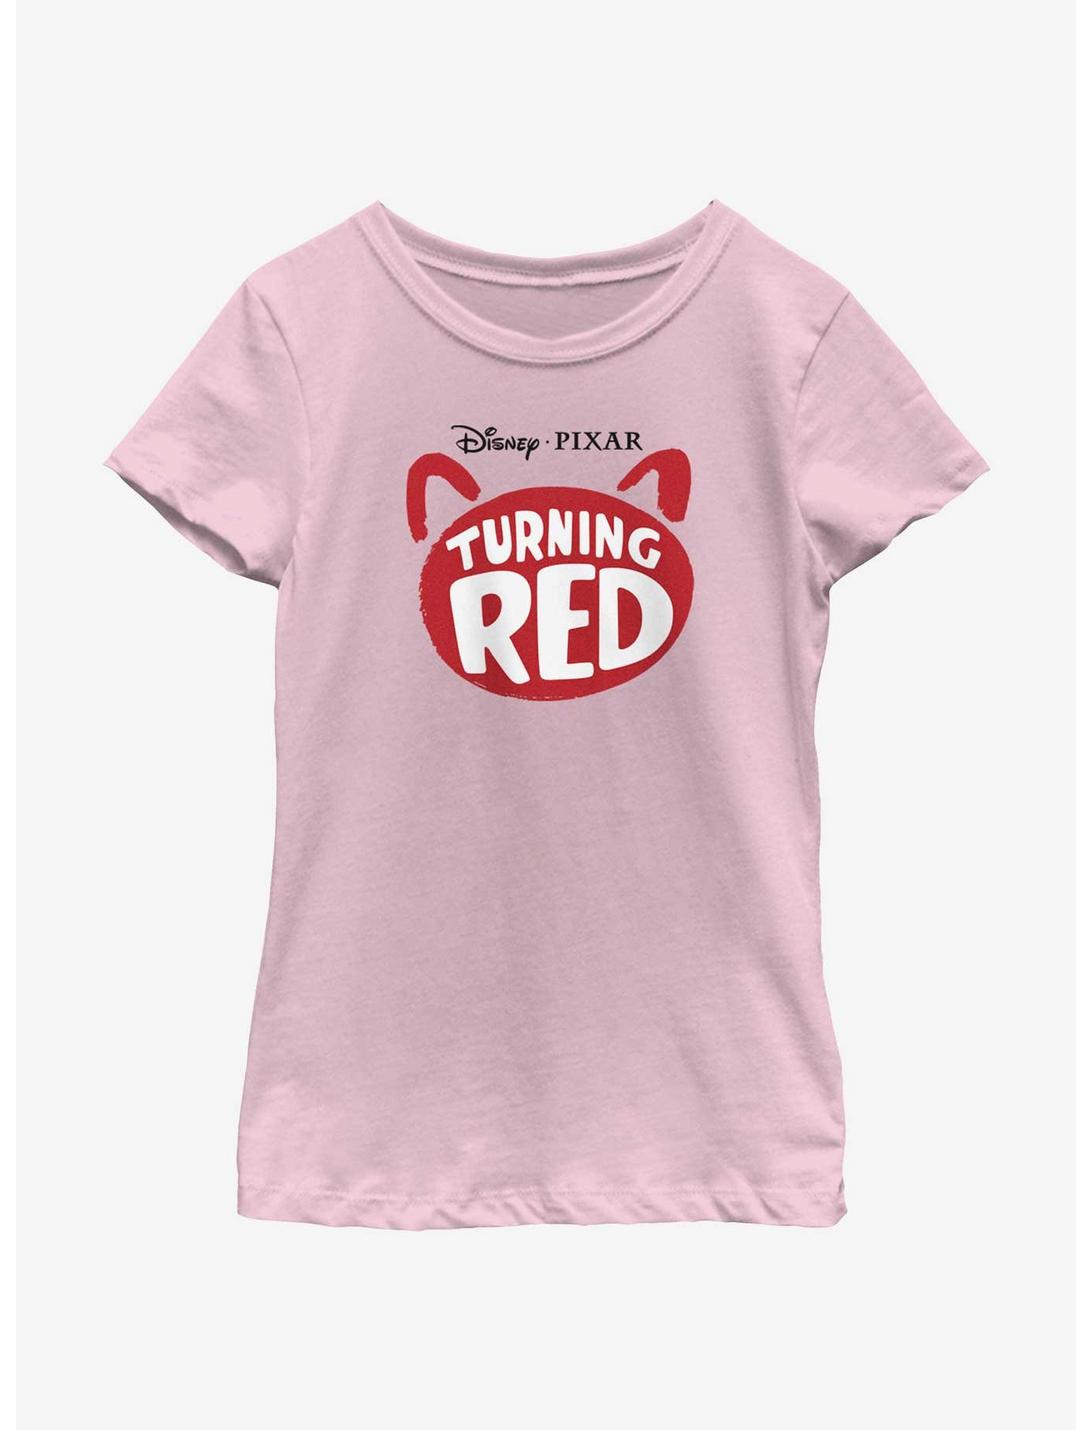 Disney Pixar Turning Red Panda Logo Youth Girls T-Shirt, PINK, hi-res